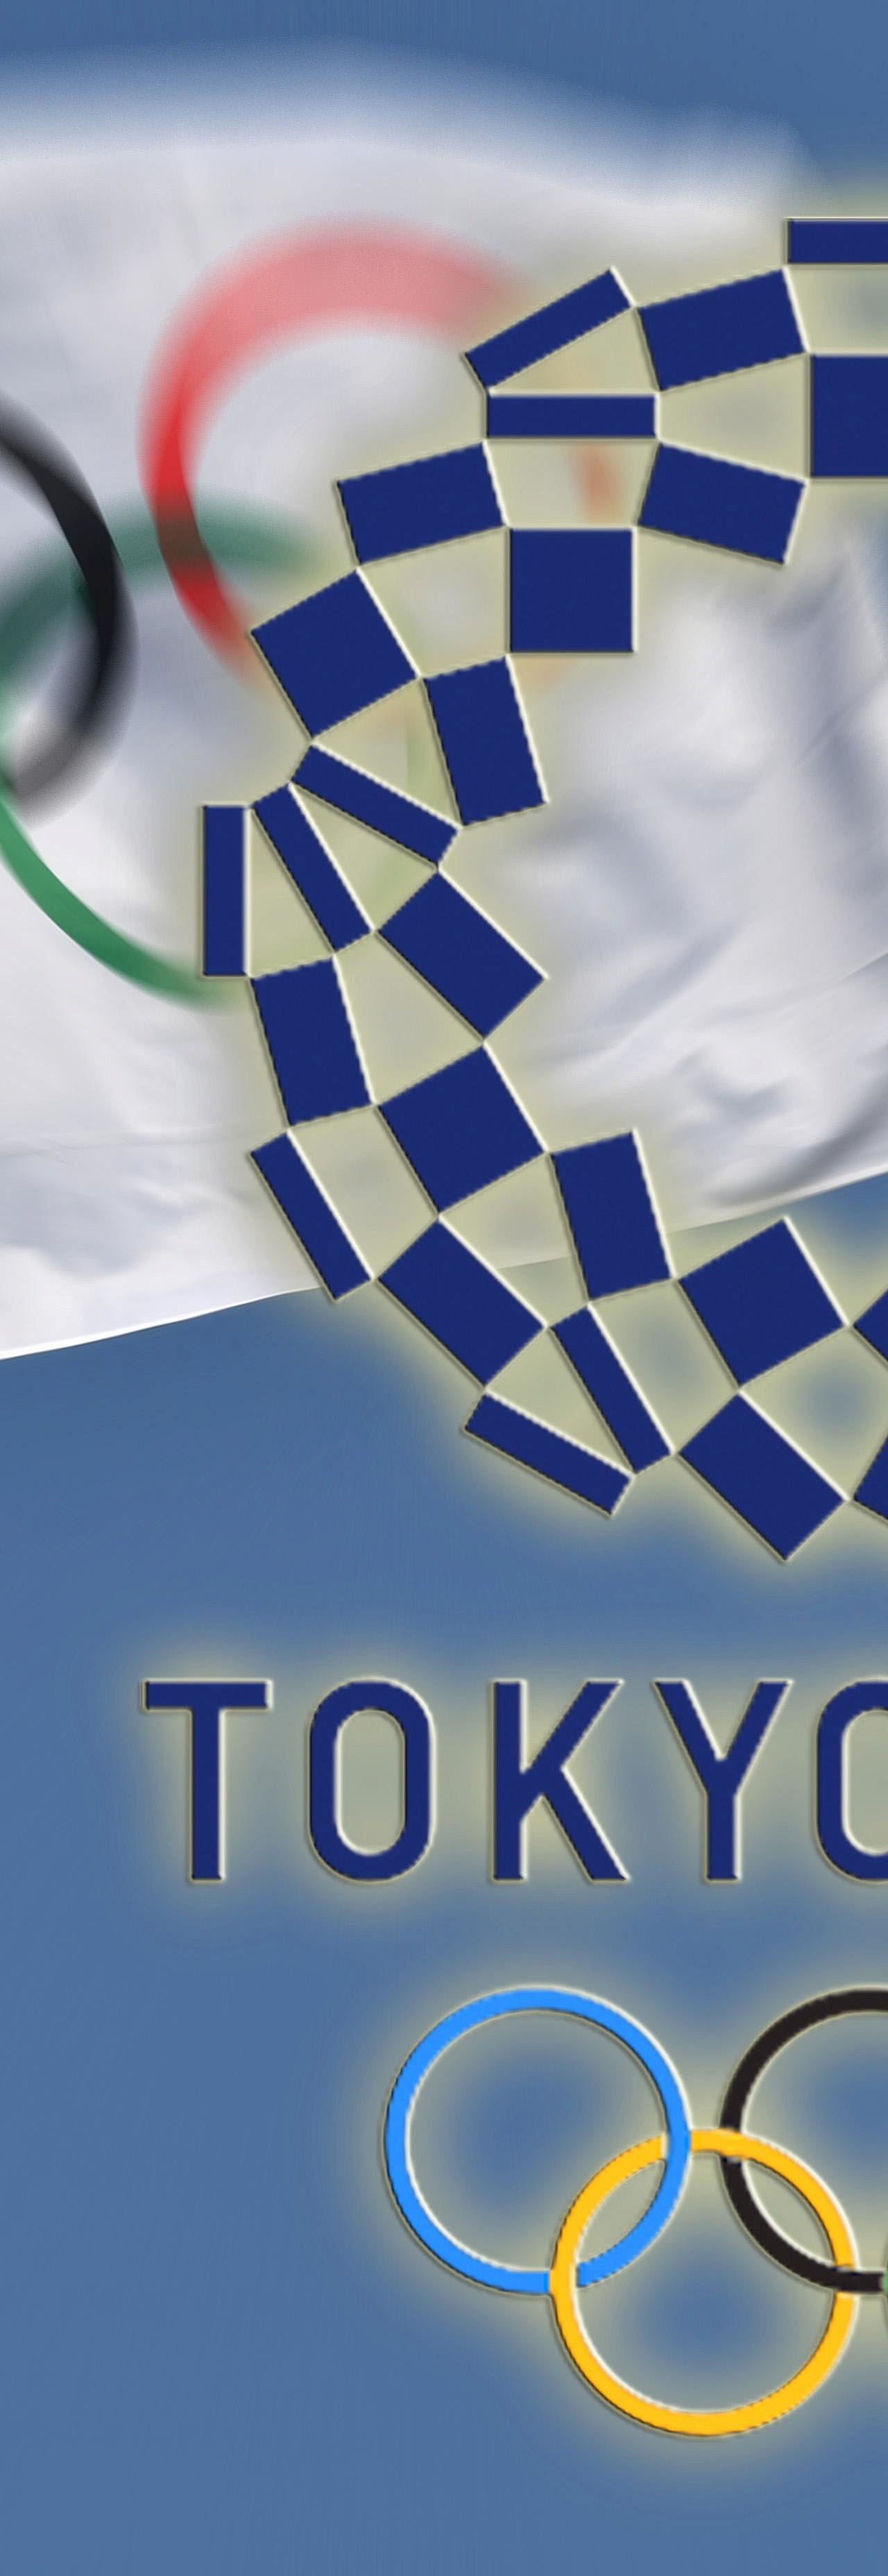 Наши в Токио: златоустовцы представят Россию на Олимпиаде